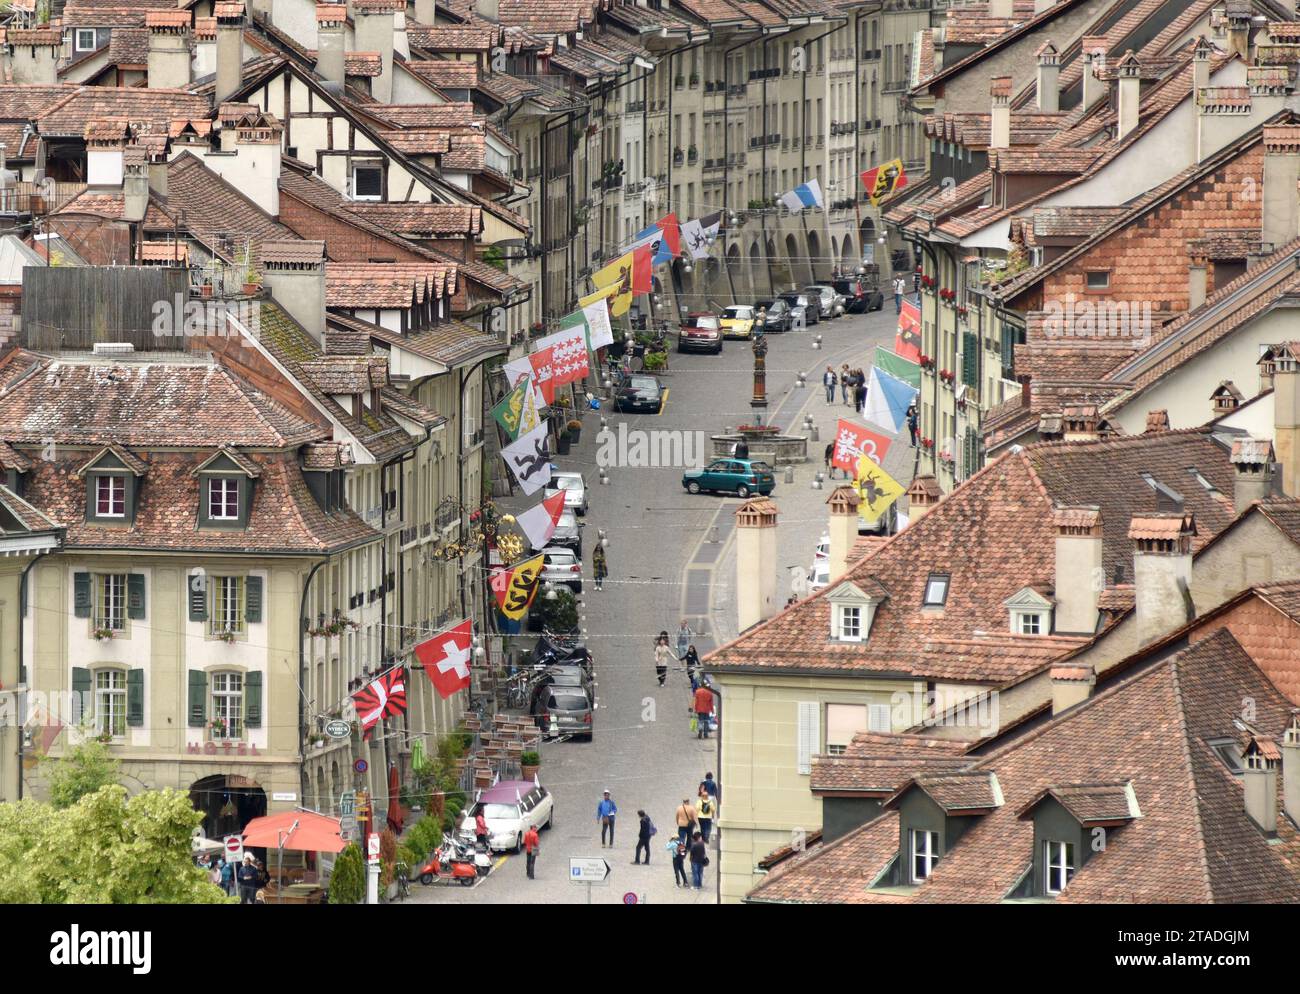 Berna, Svizzera - 4 giugno 2017: Paesaggio urbano di Berna con la via dello shopping nell'antica città medievale. Vista dall'alto, Berna, Svizzera. Foto Stock